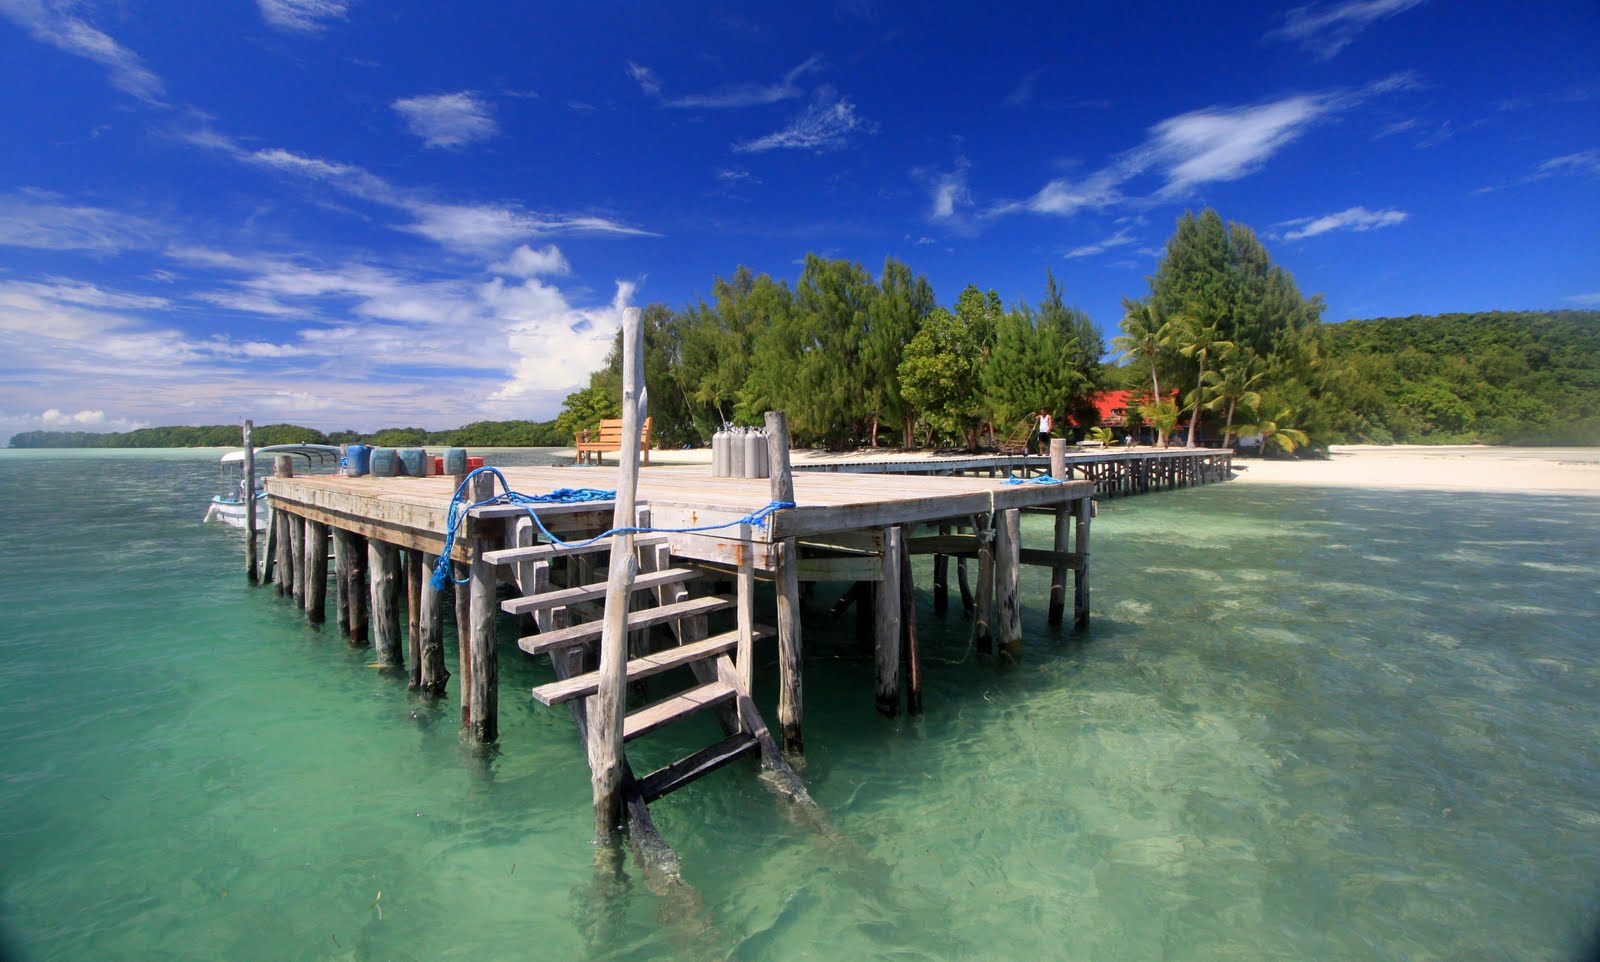 Carp Island Resort'in fotoğrafı doğal alan içinde bulunmaktadır